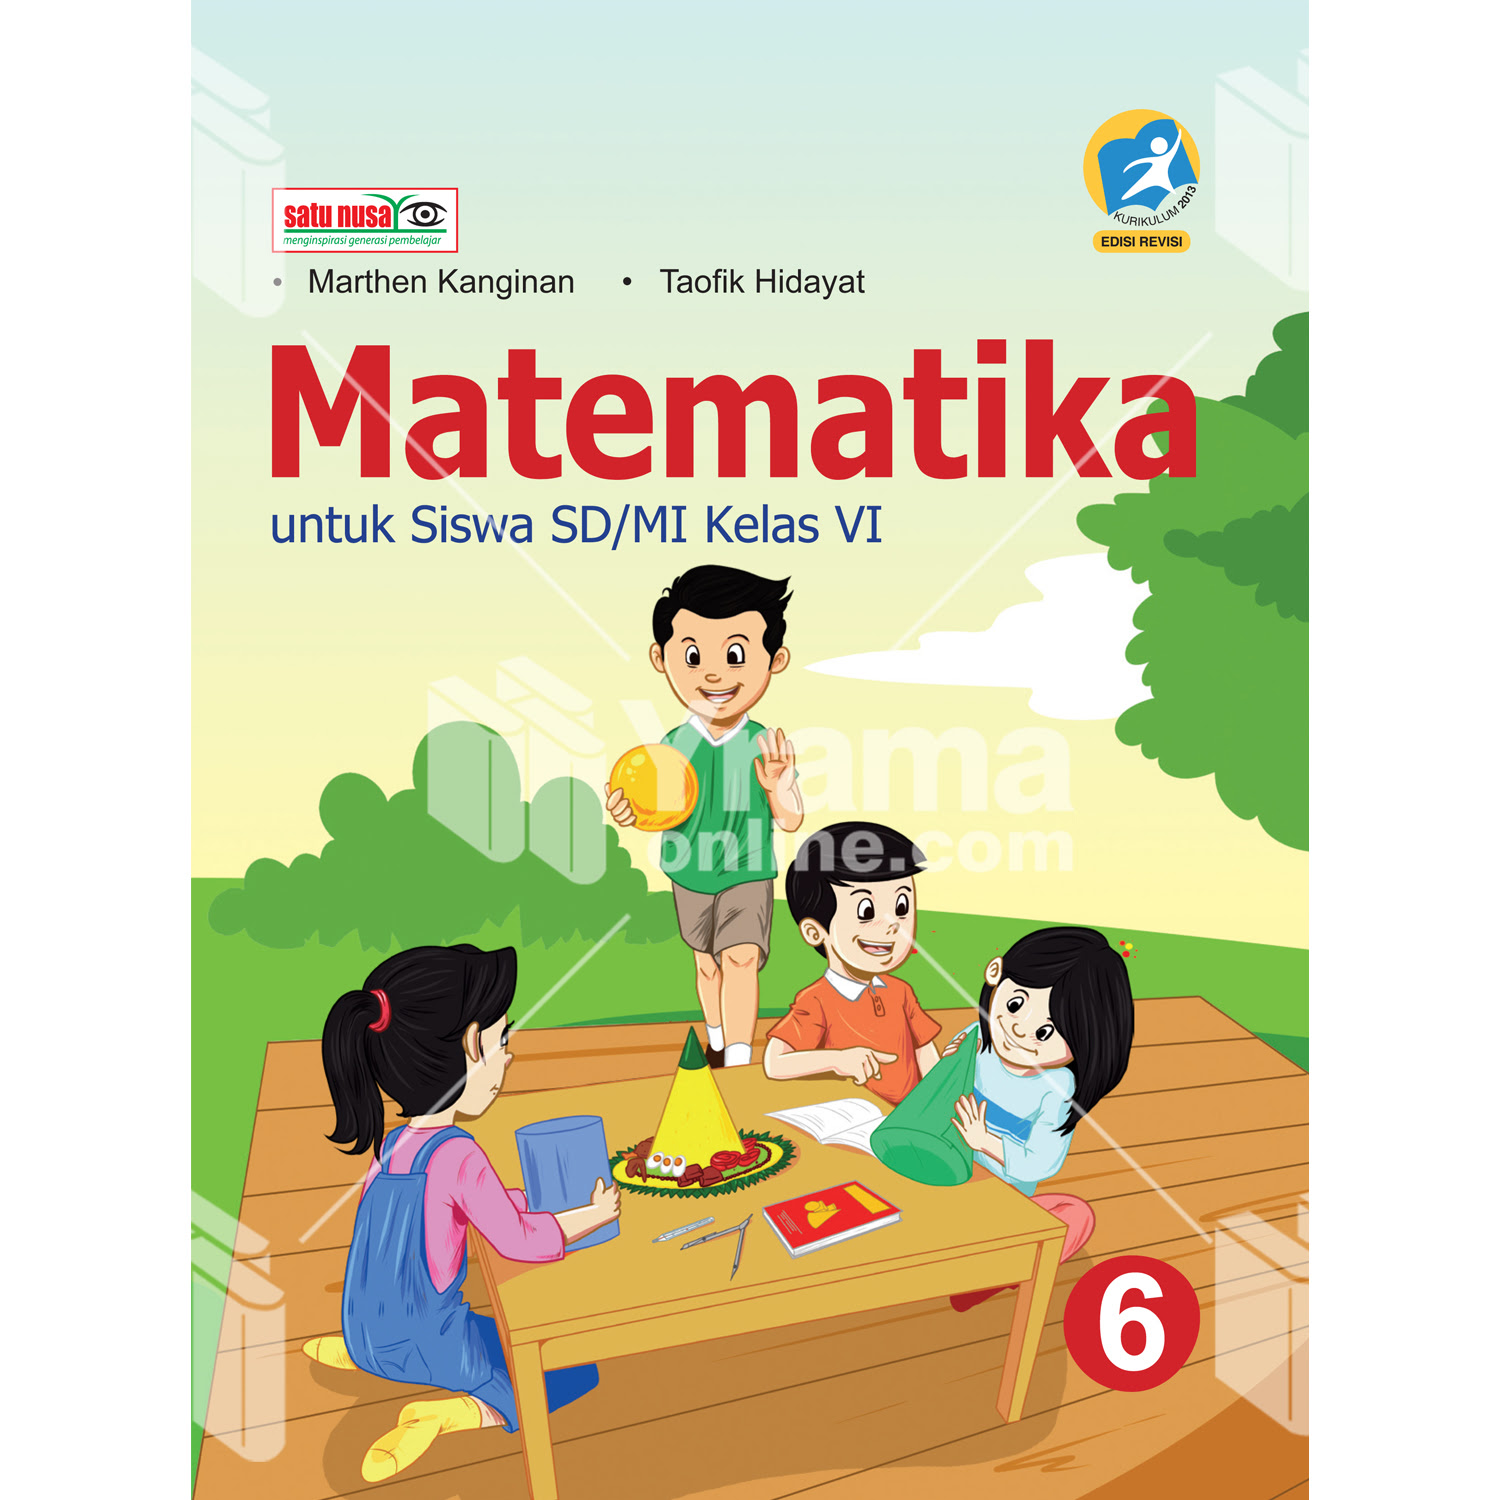 Kunci Jawaban Buku Matematika Kelas 6 Kurikulum 2013 Revisi Gudang Kunci